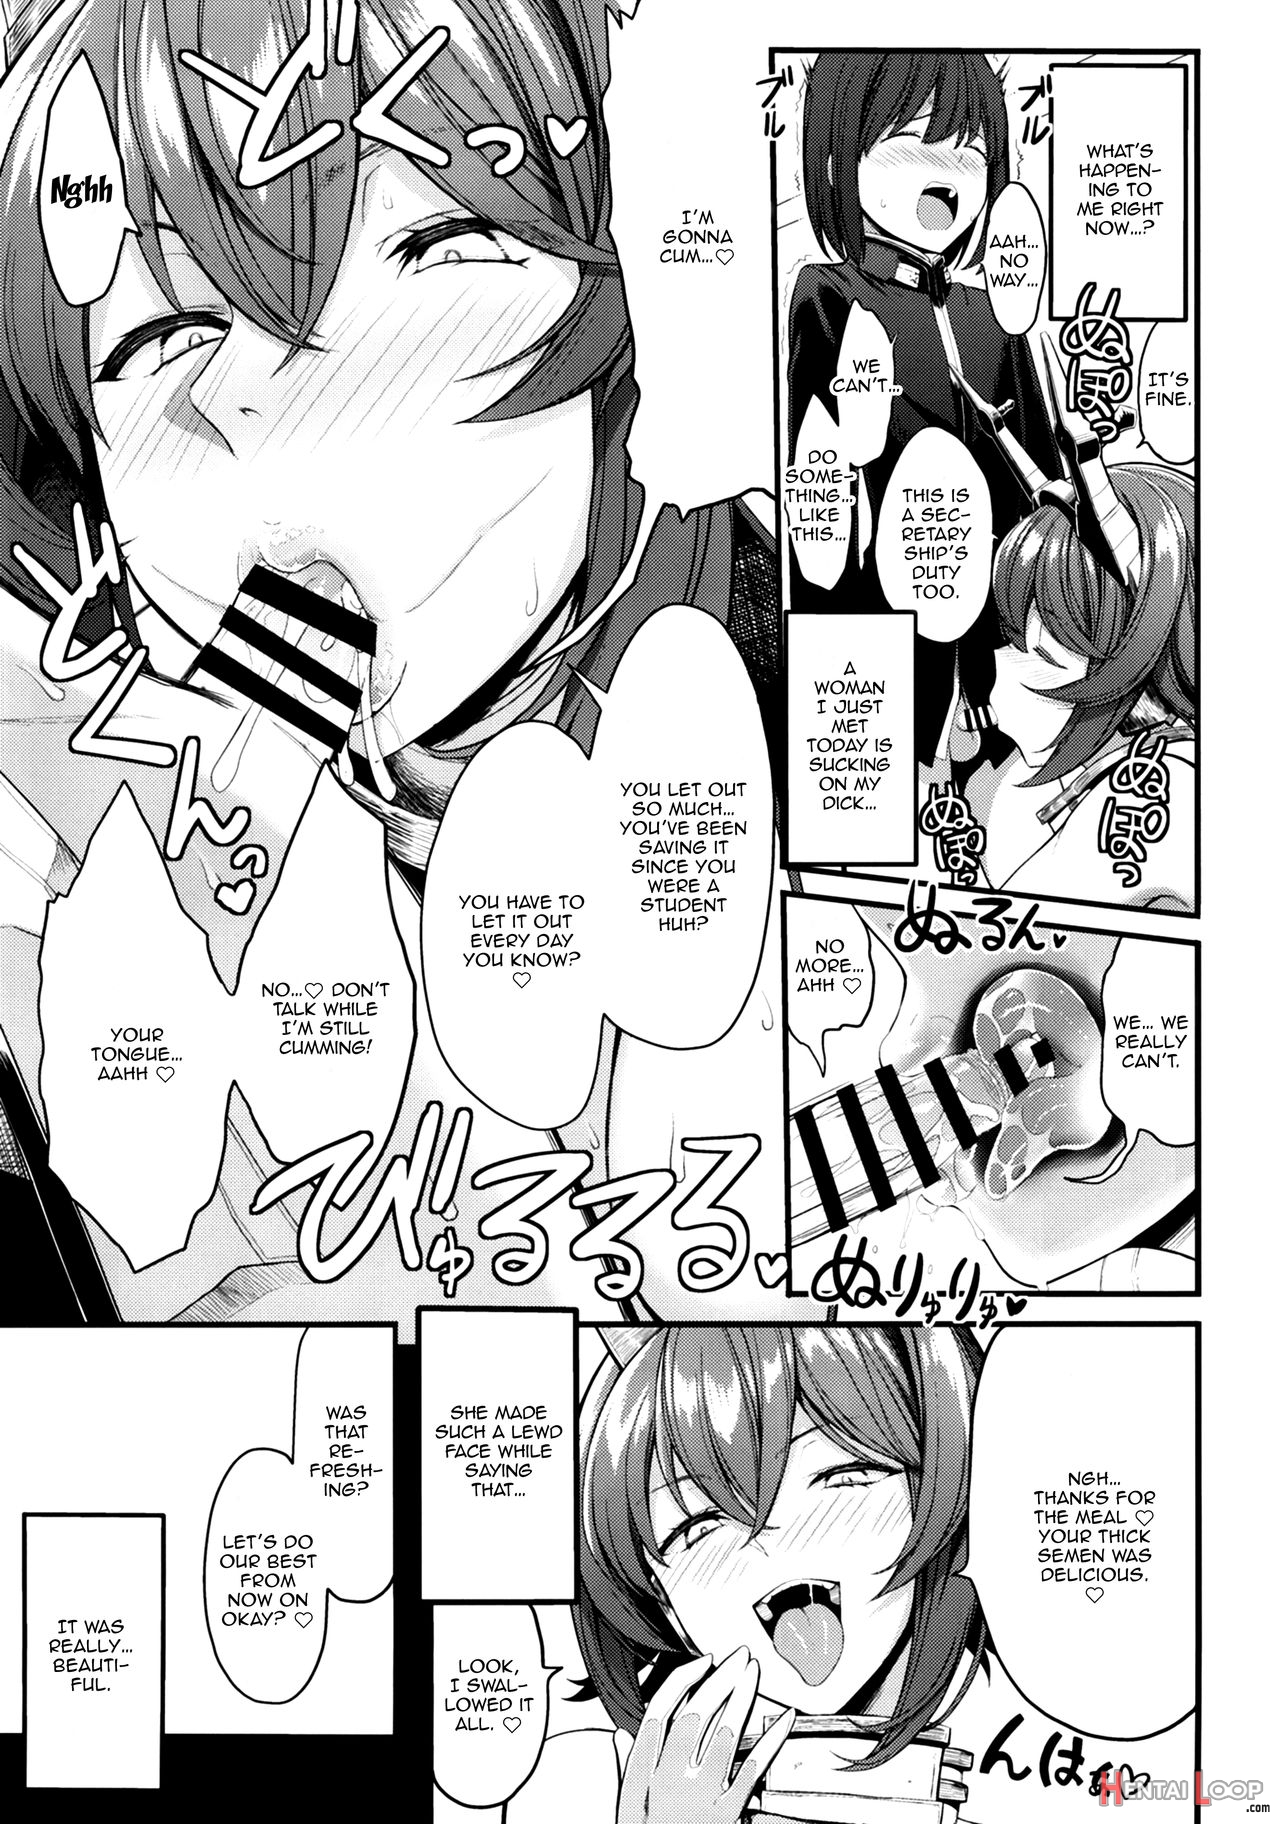 My Beloved Mutsu Onee-san page 6